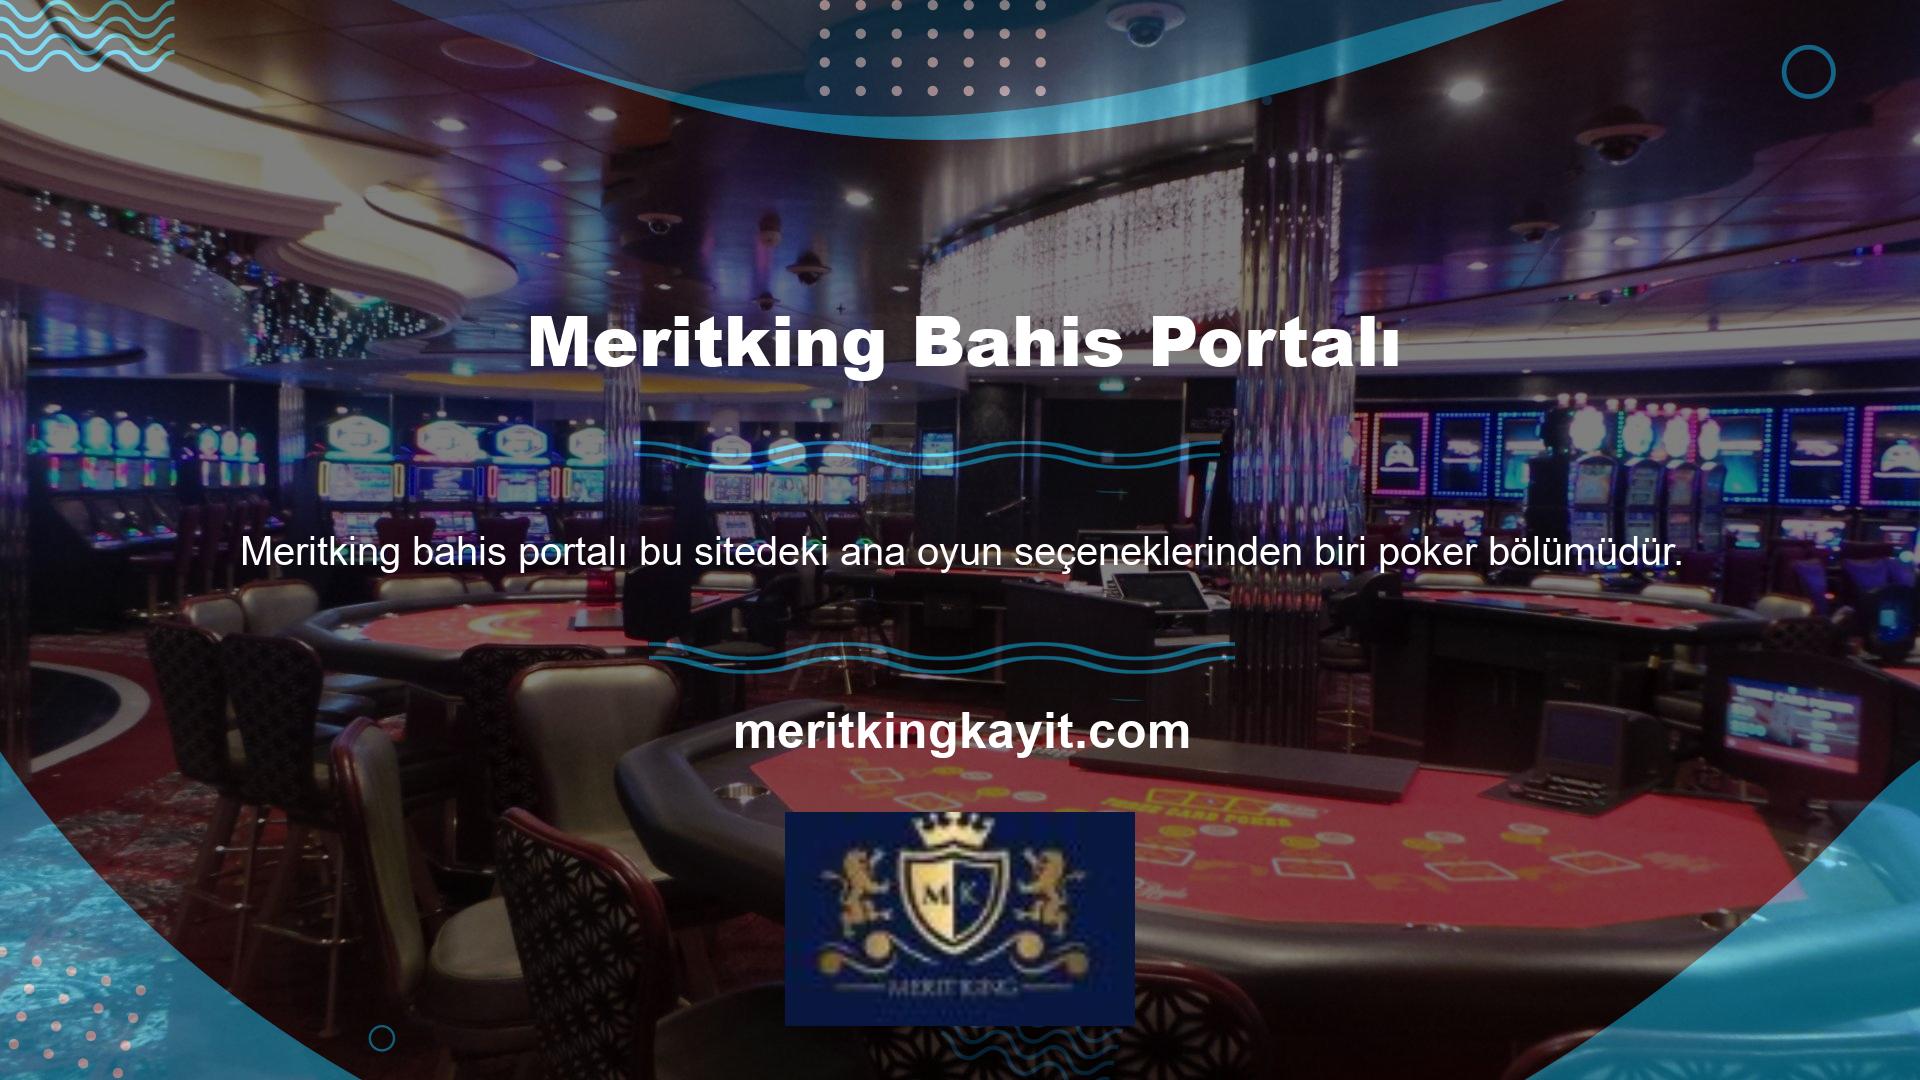 Meritking aynı zamanda poker bonusları da sunan bir sitedir